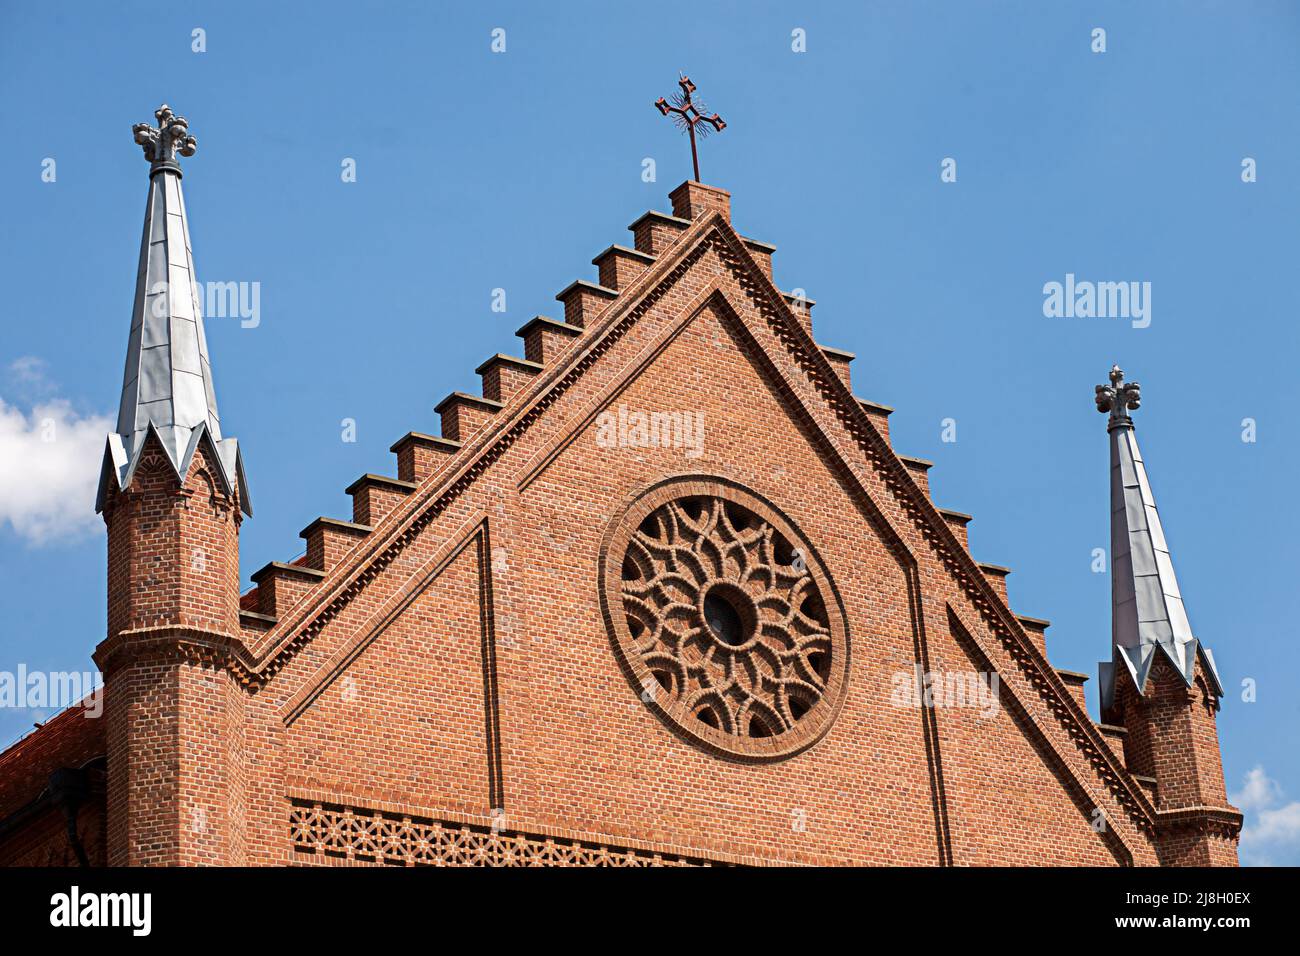 Vue d'un fragment situé dans la partie avant supérieure du mur de l'église contre le ciel bleu. Tourisme en Pologne. Banque D'Images